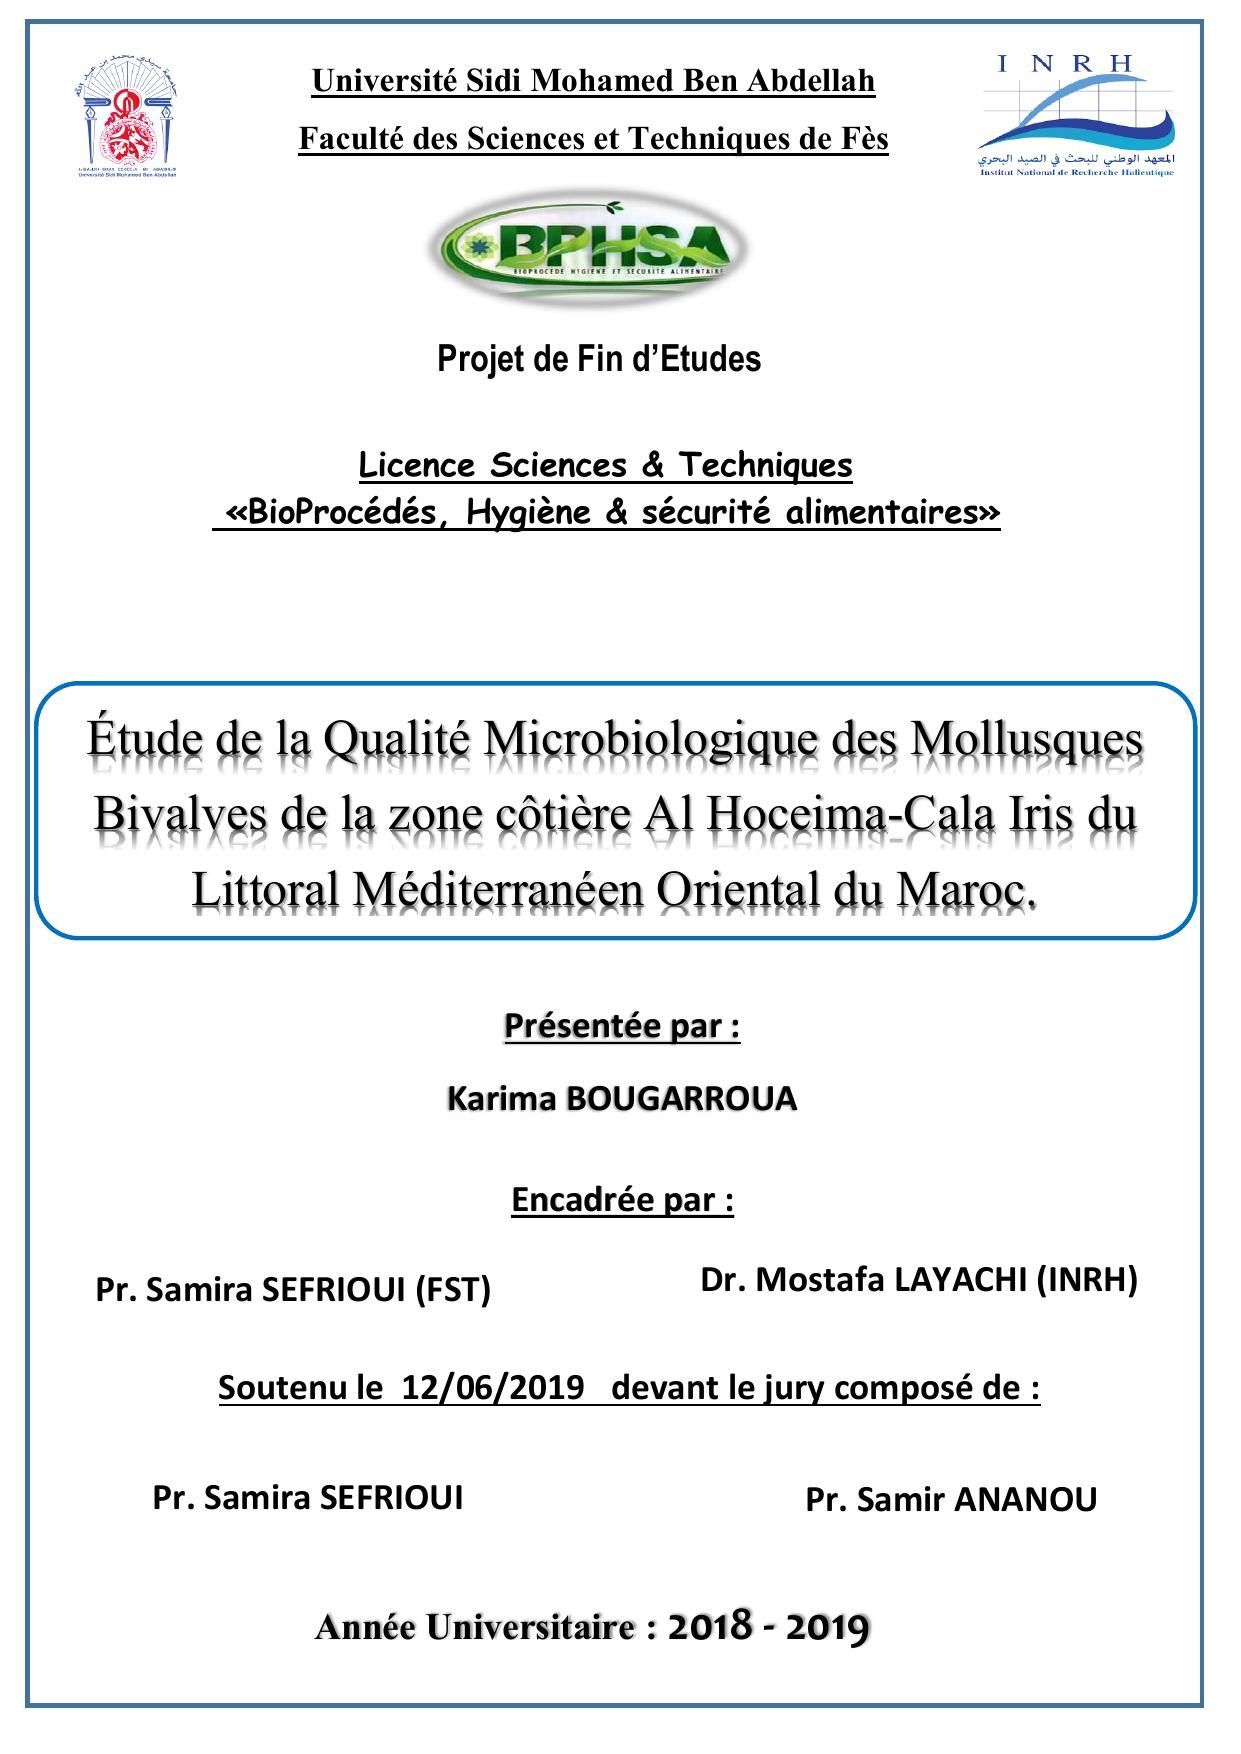 Etude de la qualité microbiologique des mollusques Bivalves de la zone côtière Al Hceima-Cala Iris du Littoral Méditerranéen Oriental du Maroc